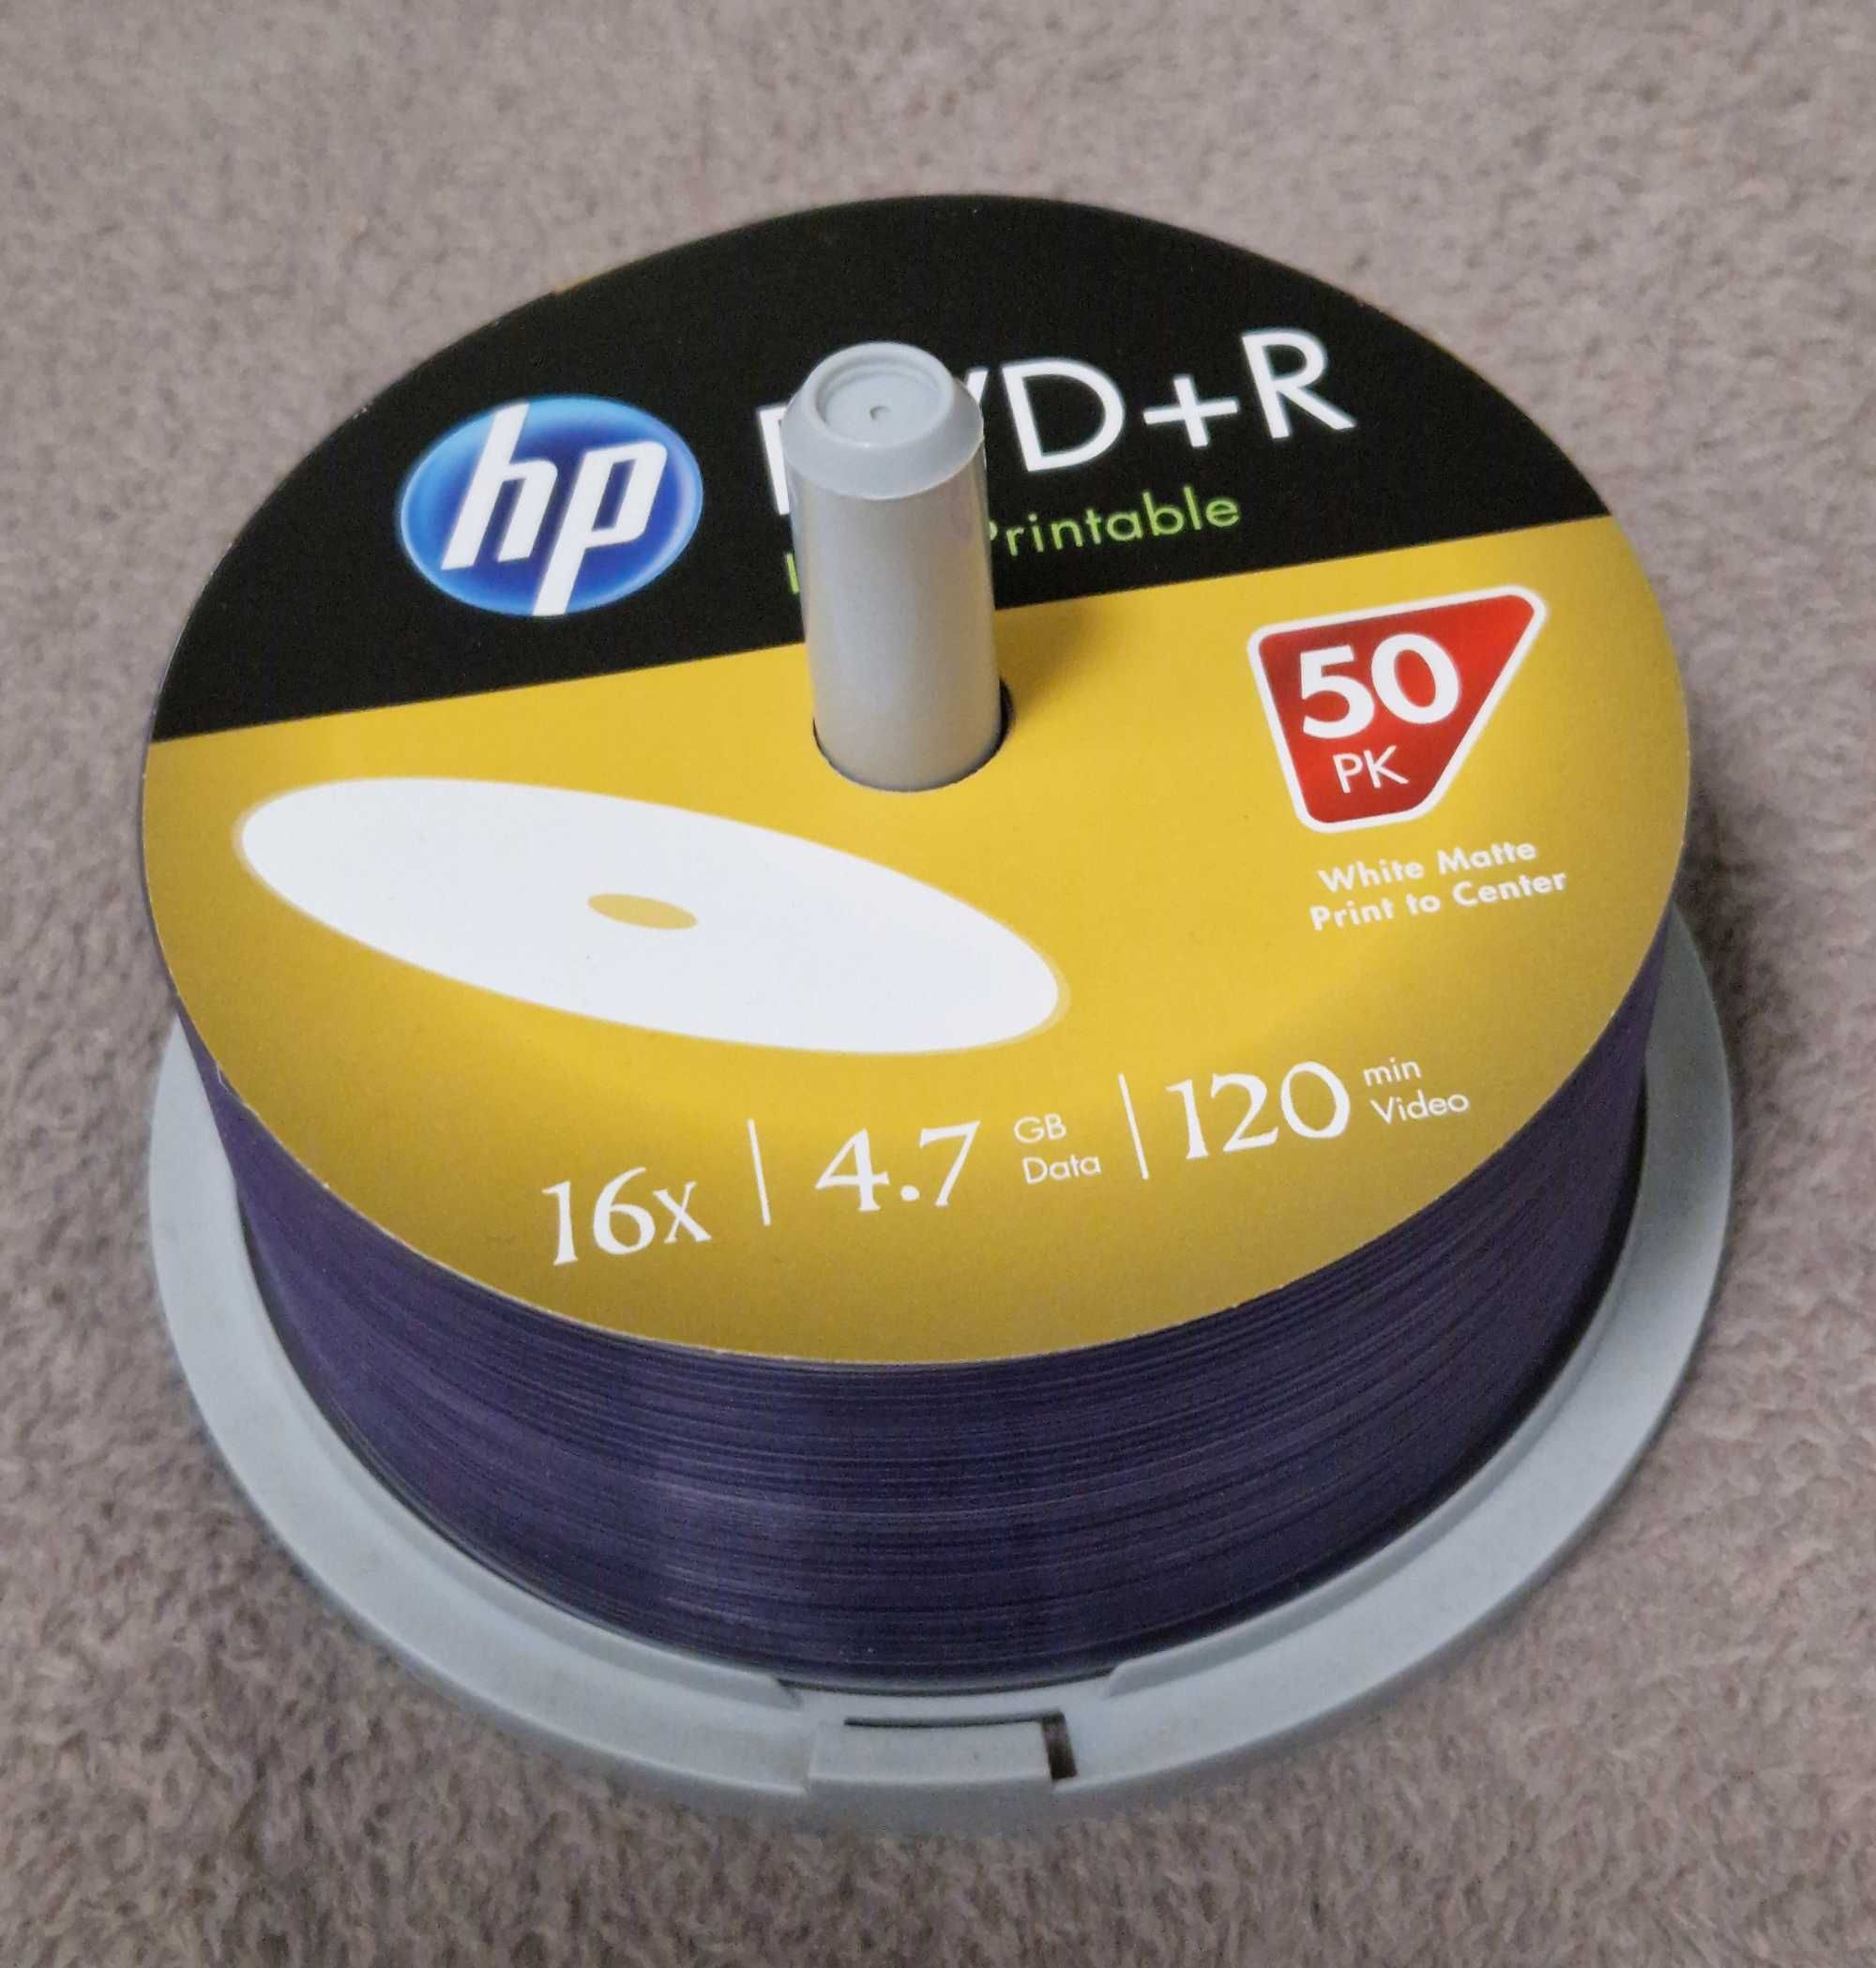 диск HP DVD+R Printable 4,7 Gb